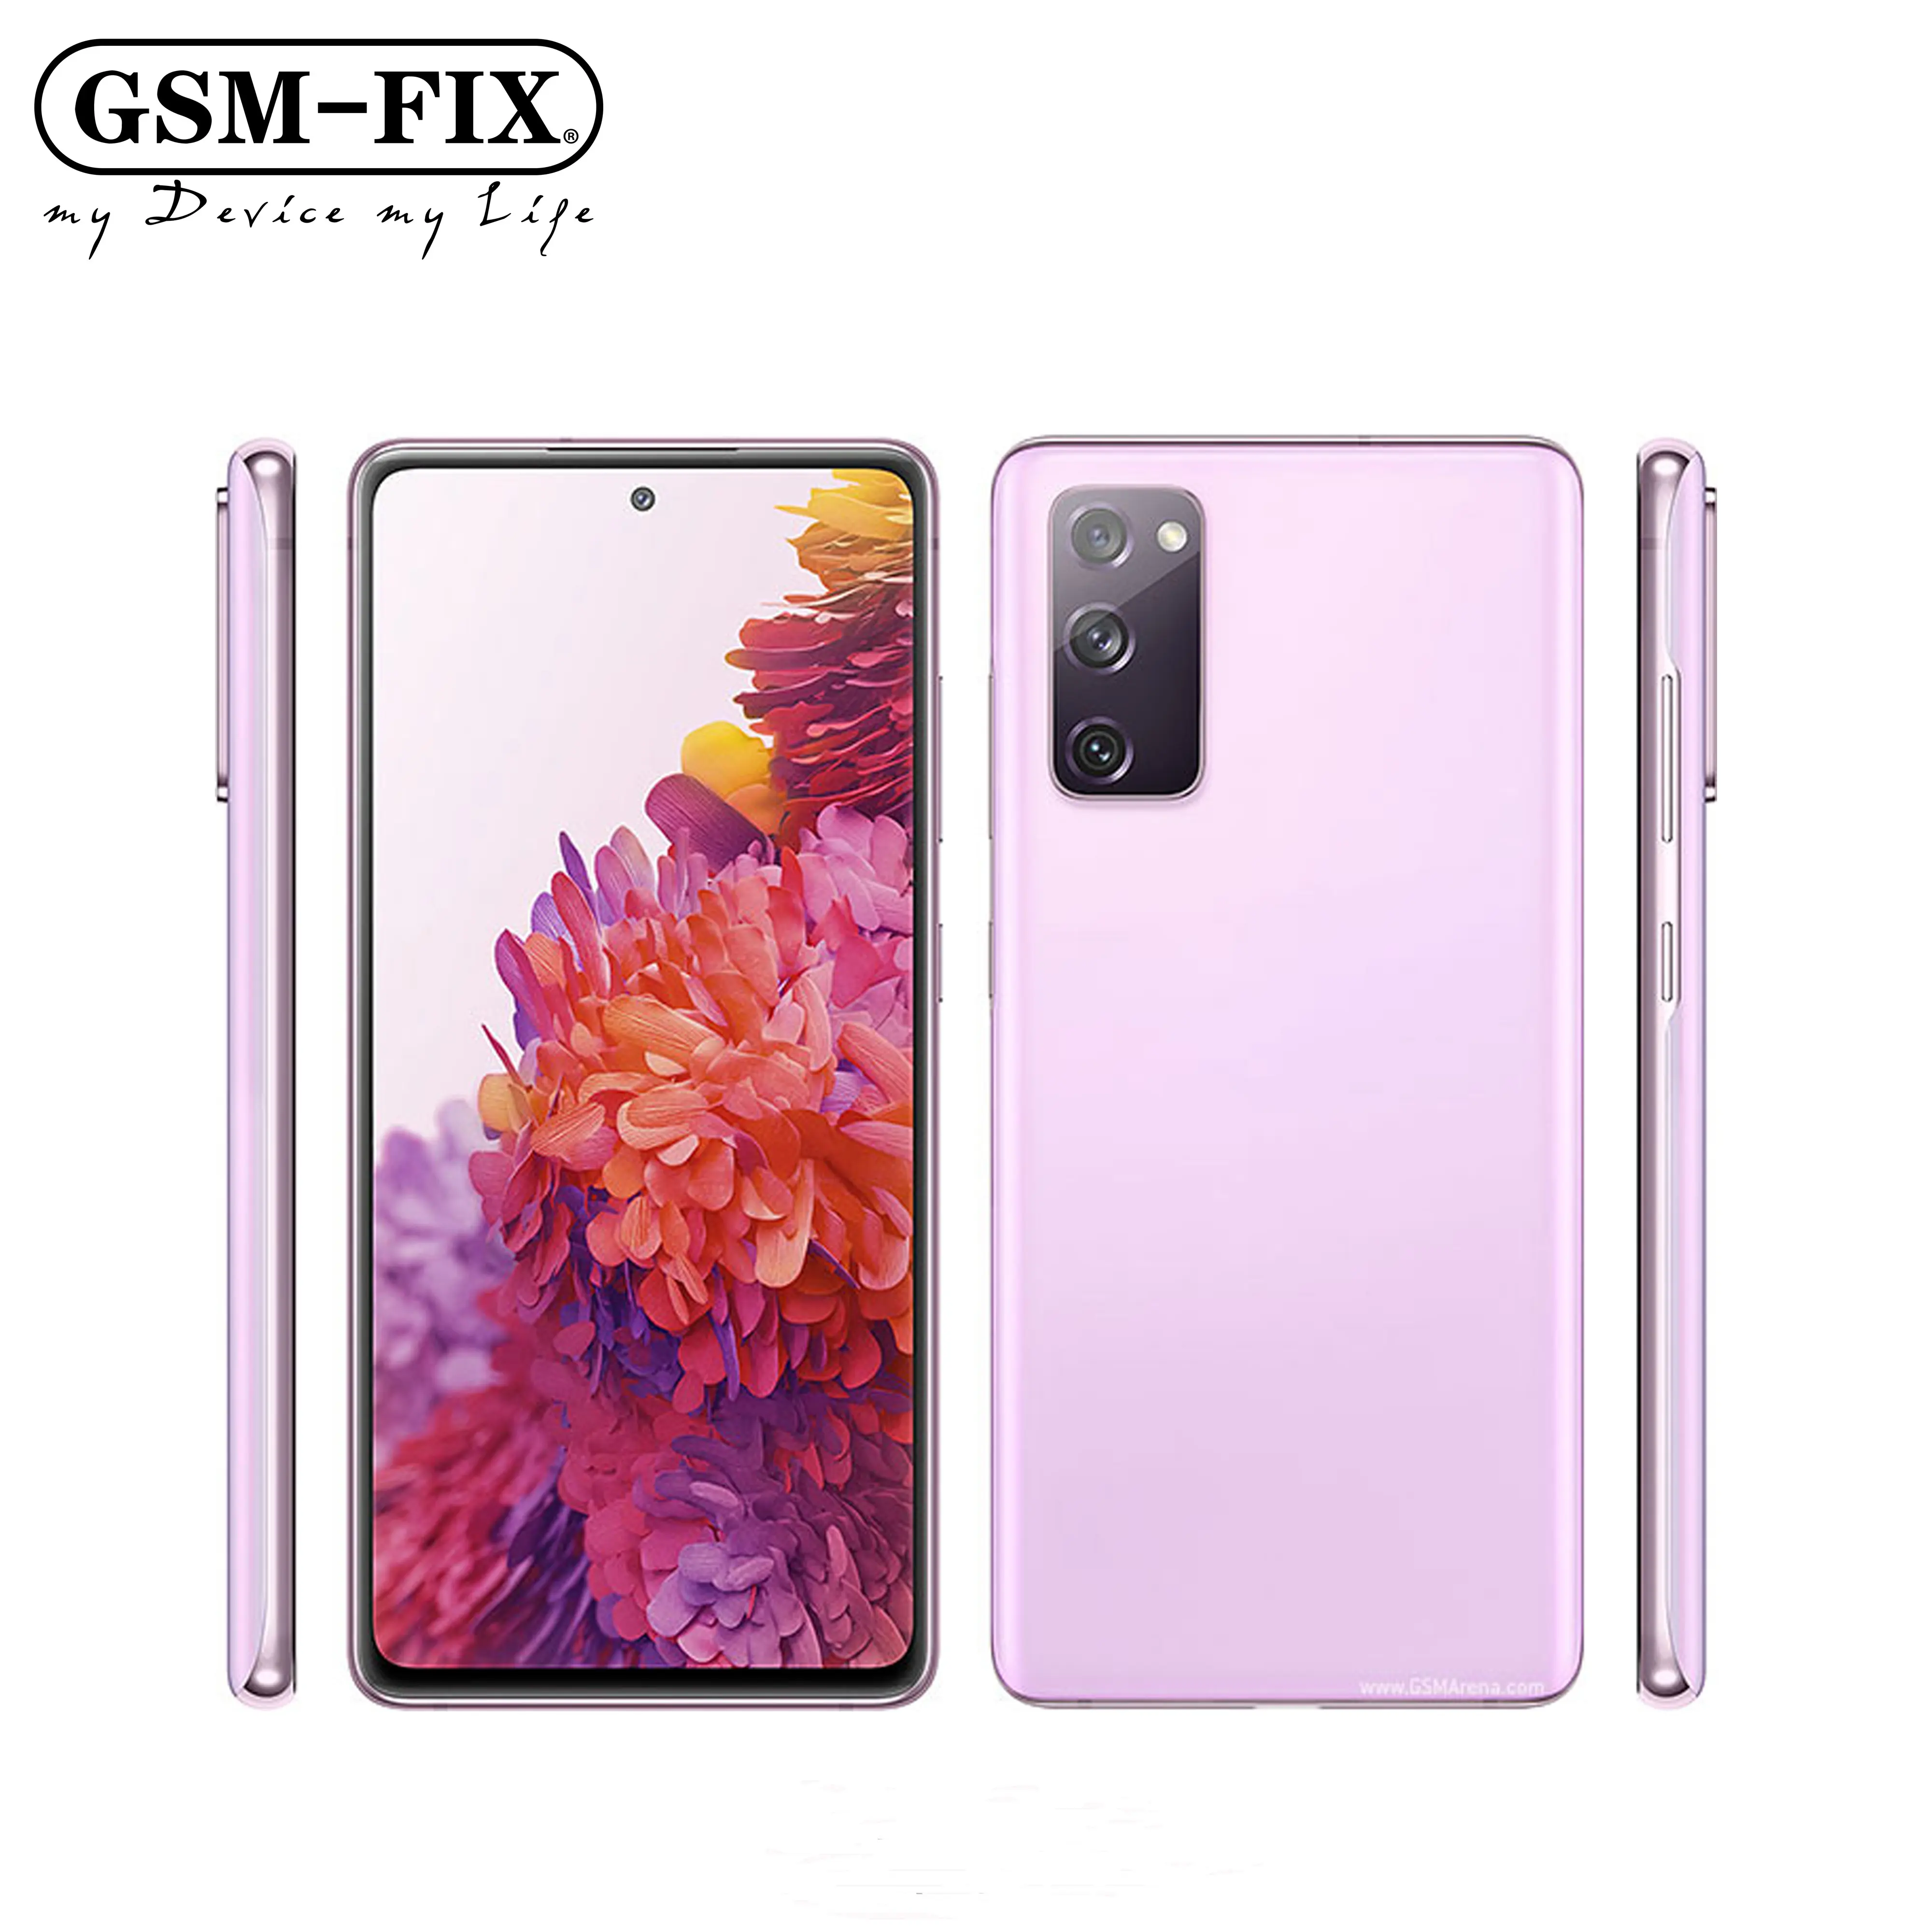 GSM-FIX Samsung Galaxy S20 FE 5G G781U1 128GB Octa Core Snapdragon 865 6.5 "32MP & 8MP & デュアル12MPオリジナル携帯電話用